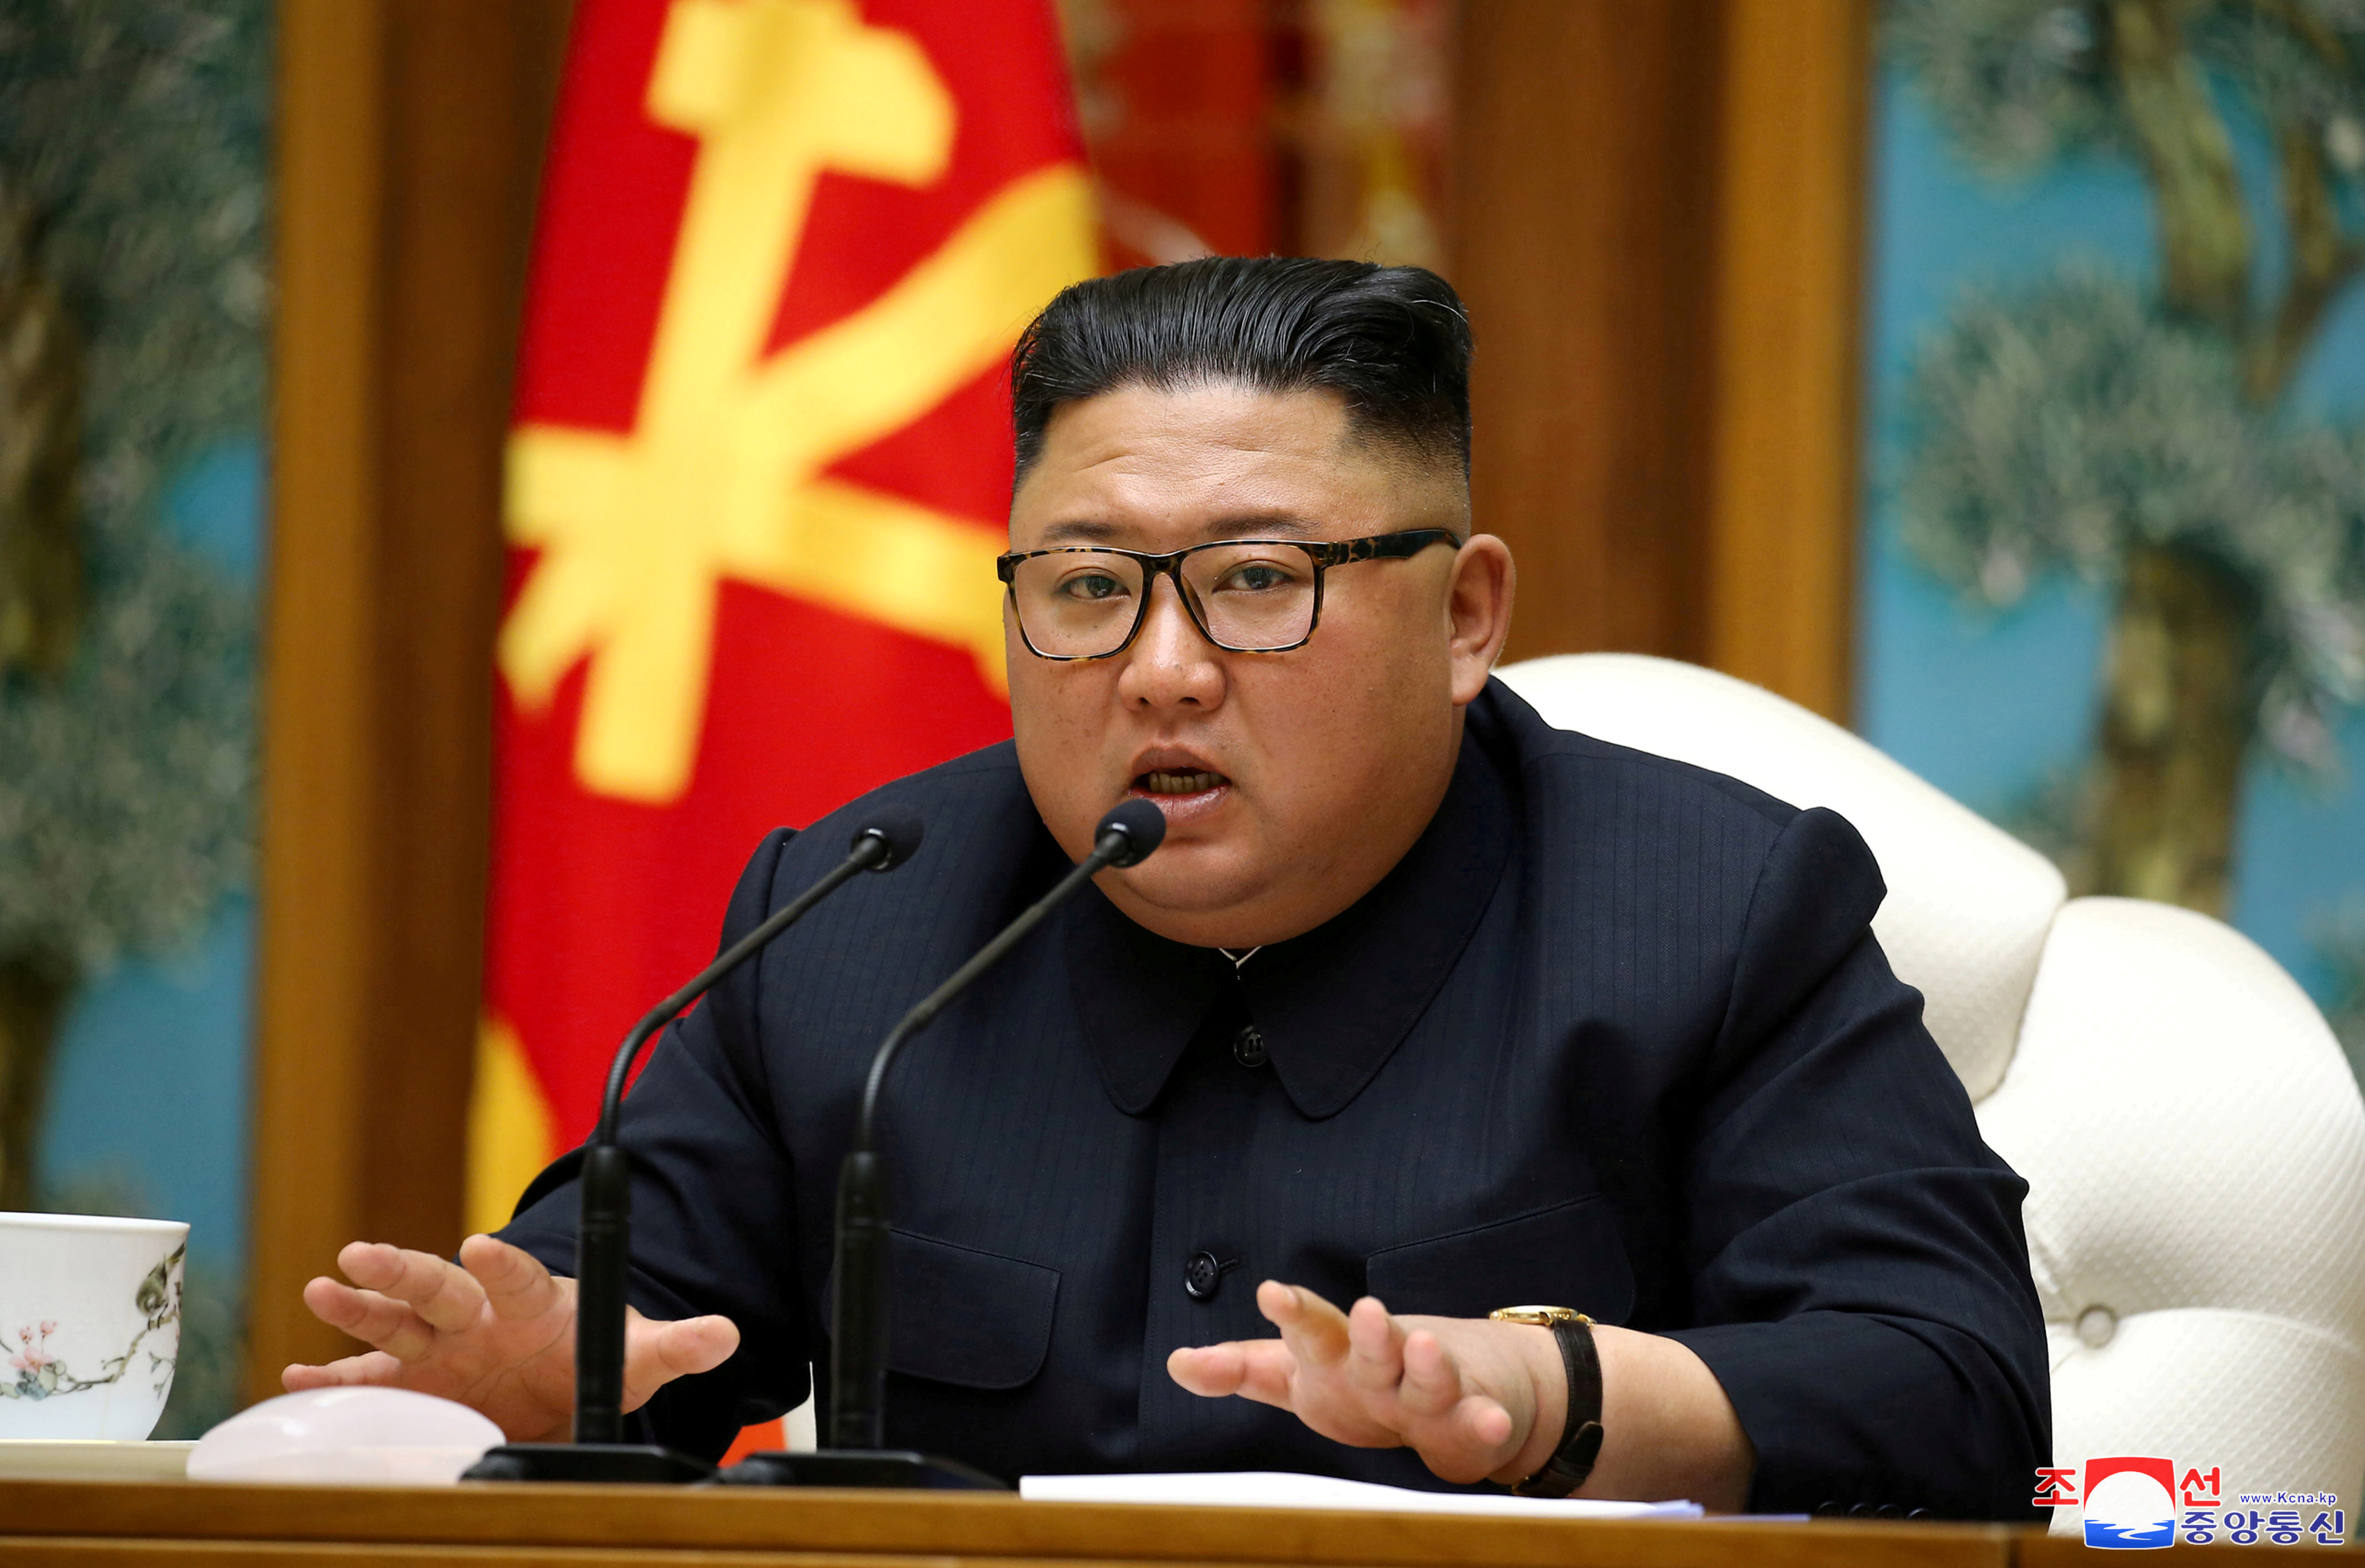 La AMENAZA de Corea del Norte a Reino Unido luego de las sanciones, que avizora un fuerte conflicto